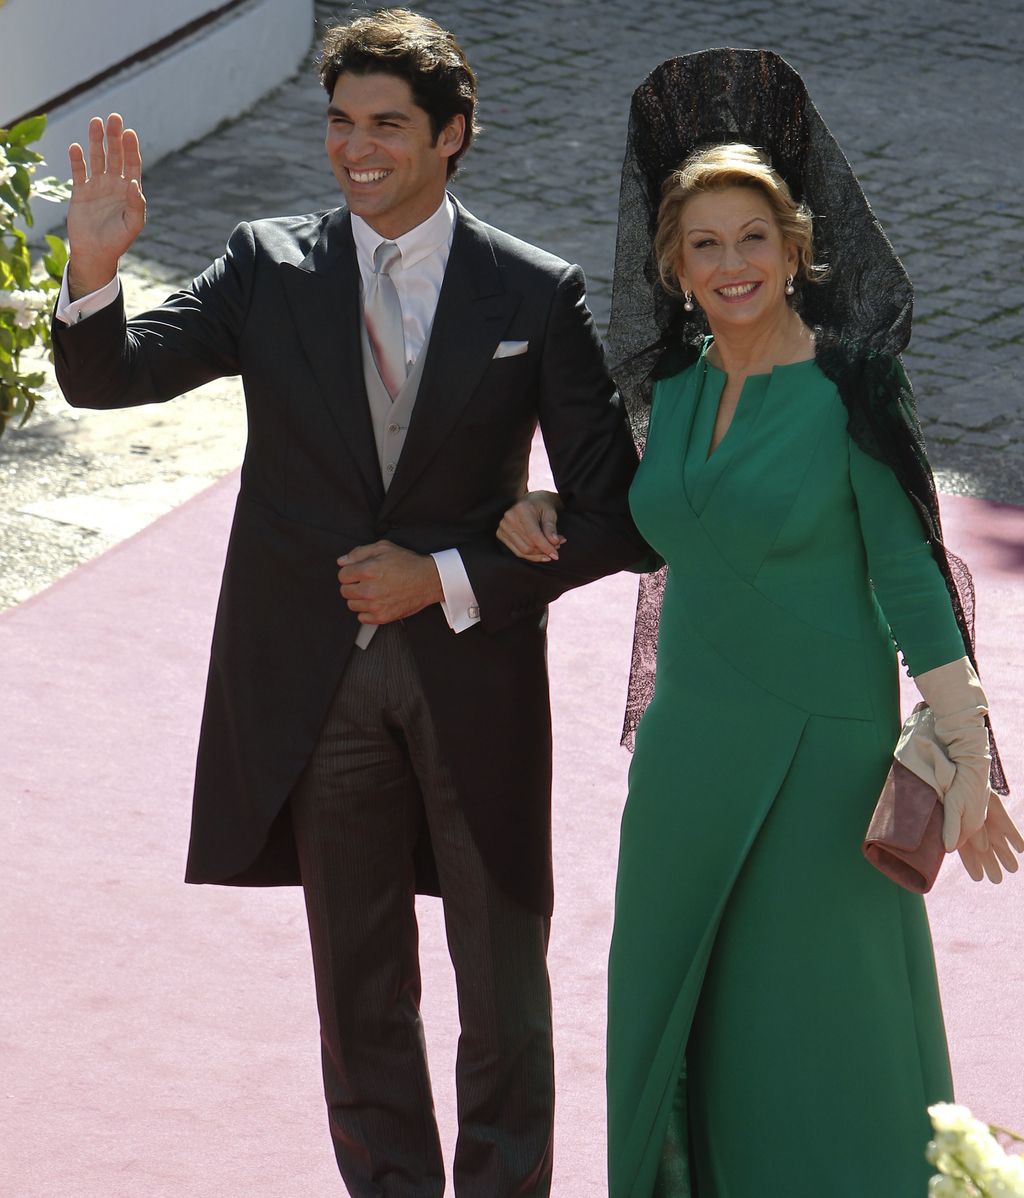 La boda de Cayetano Rivera y Eva González